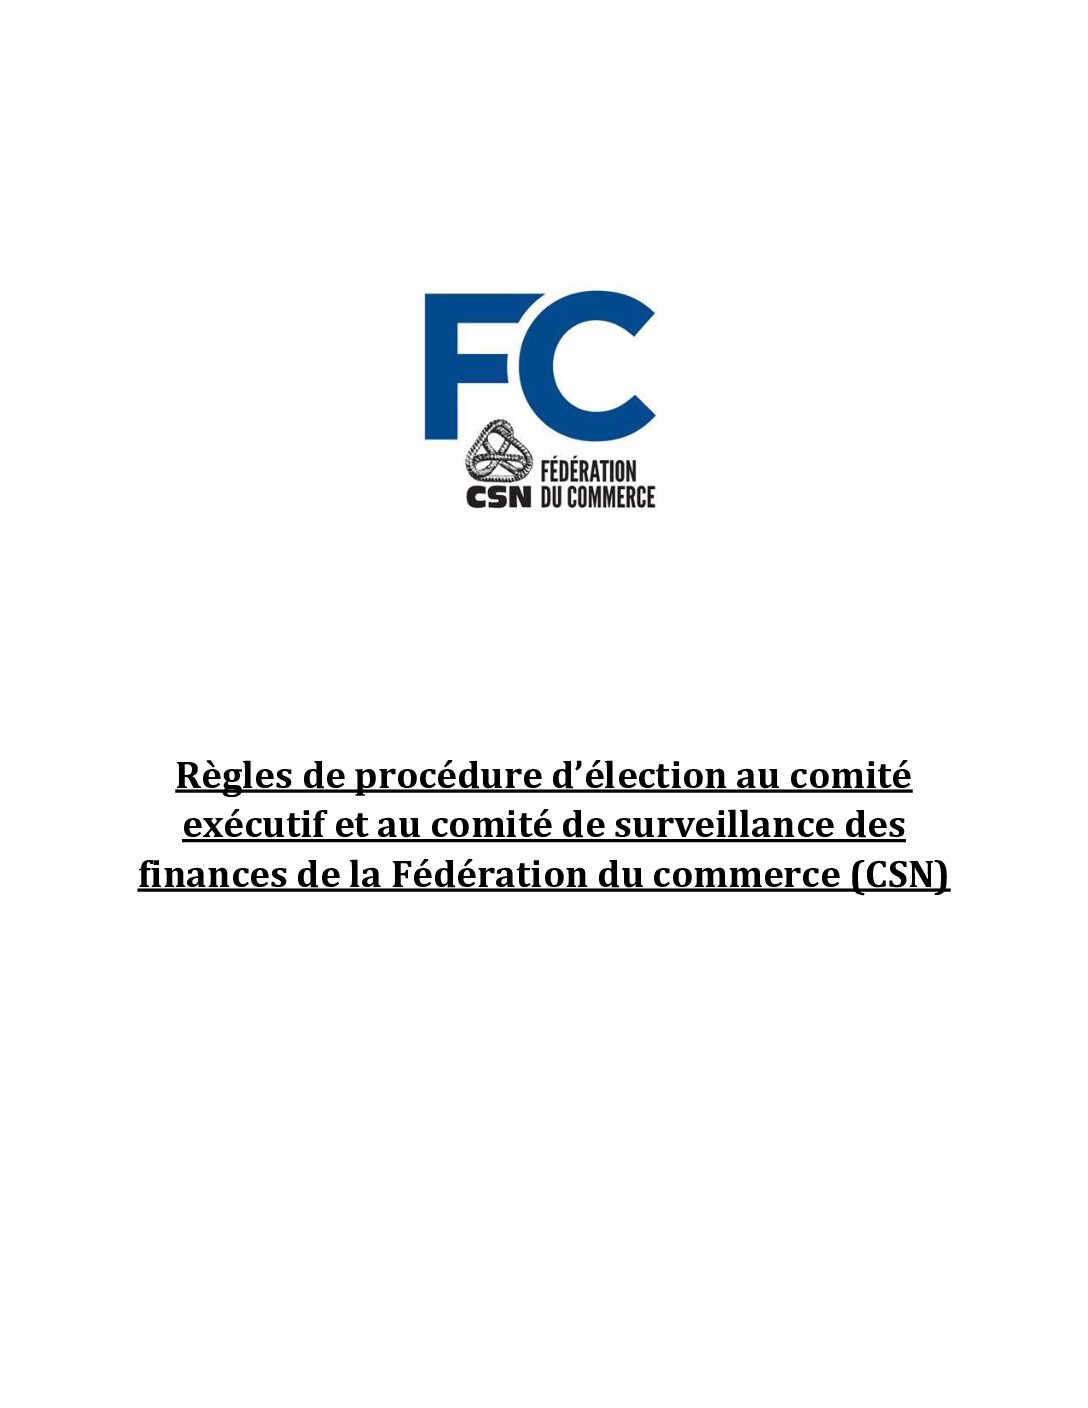 Règles de procédure d'élection au comité exécurif et au comité de surveillance des finances de la FC–CSN